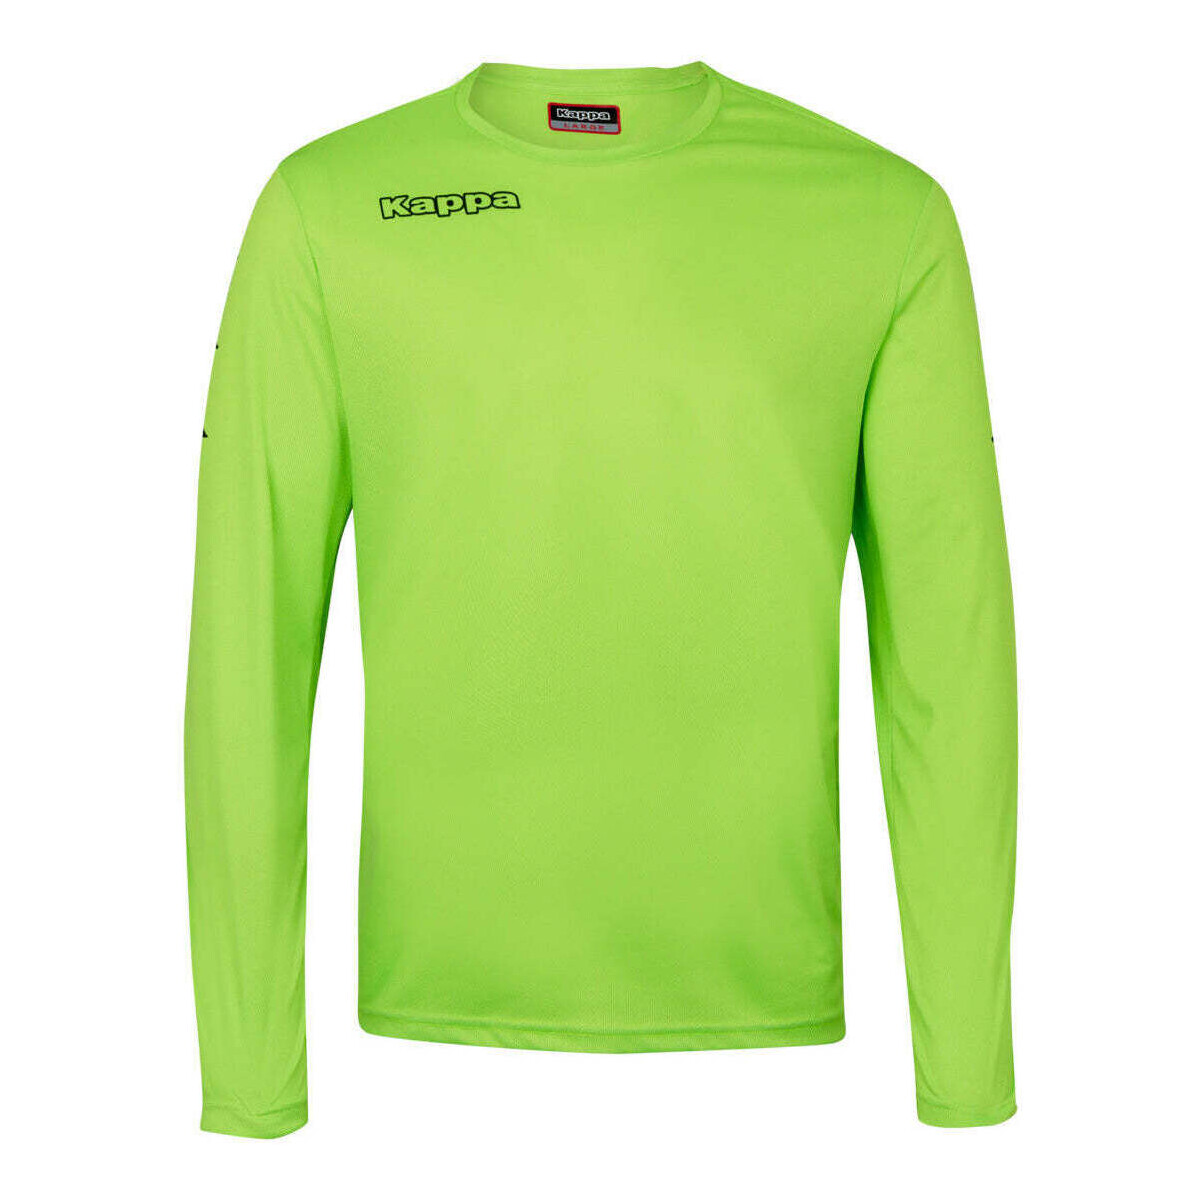 Vêtements Garçon T-shirts manches longues Kappa Maillot Goalkeeper Vert